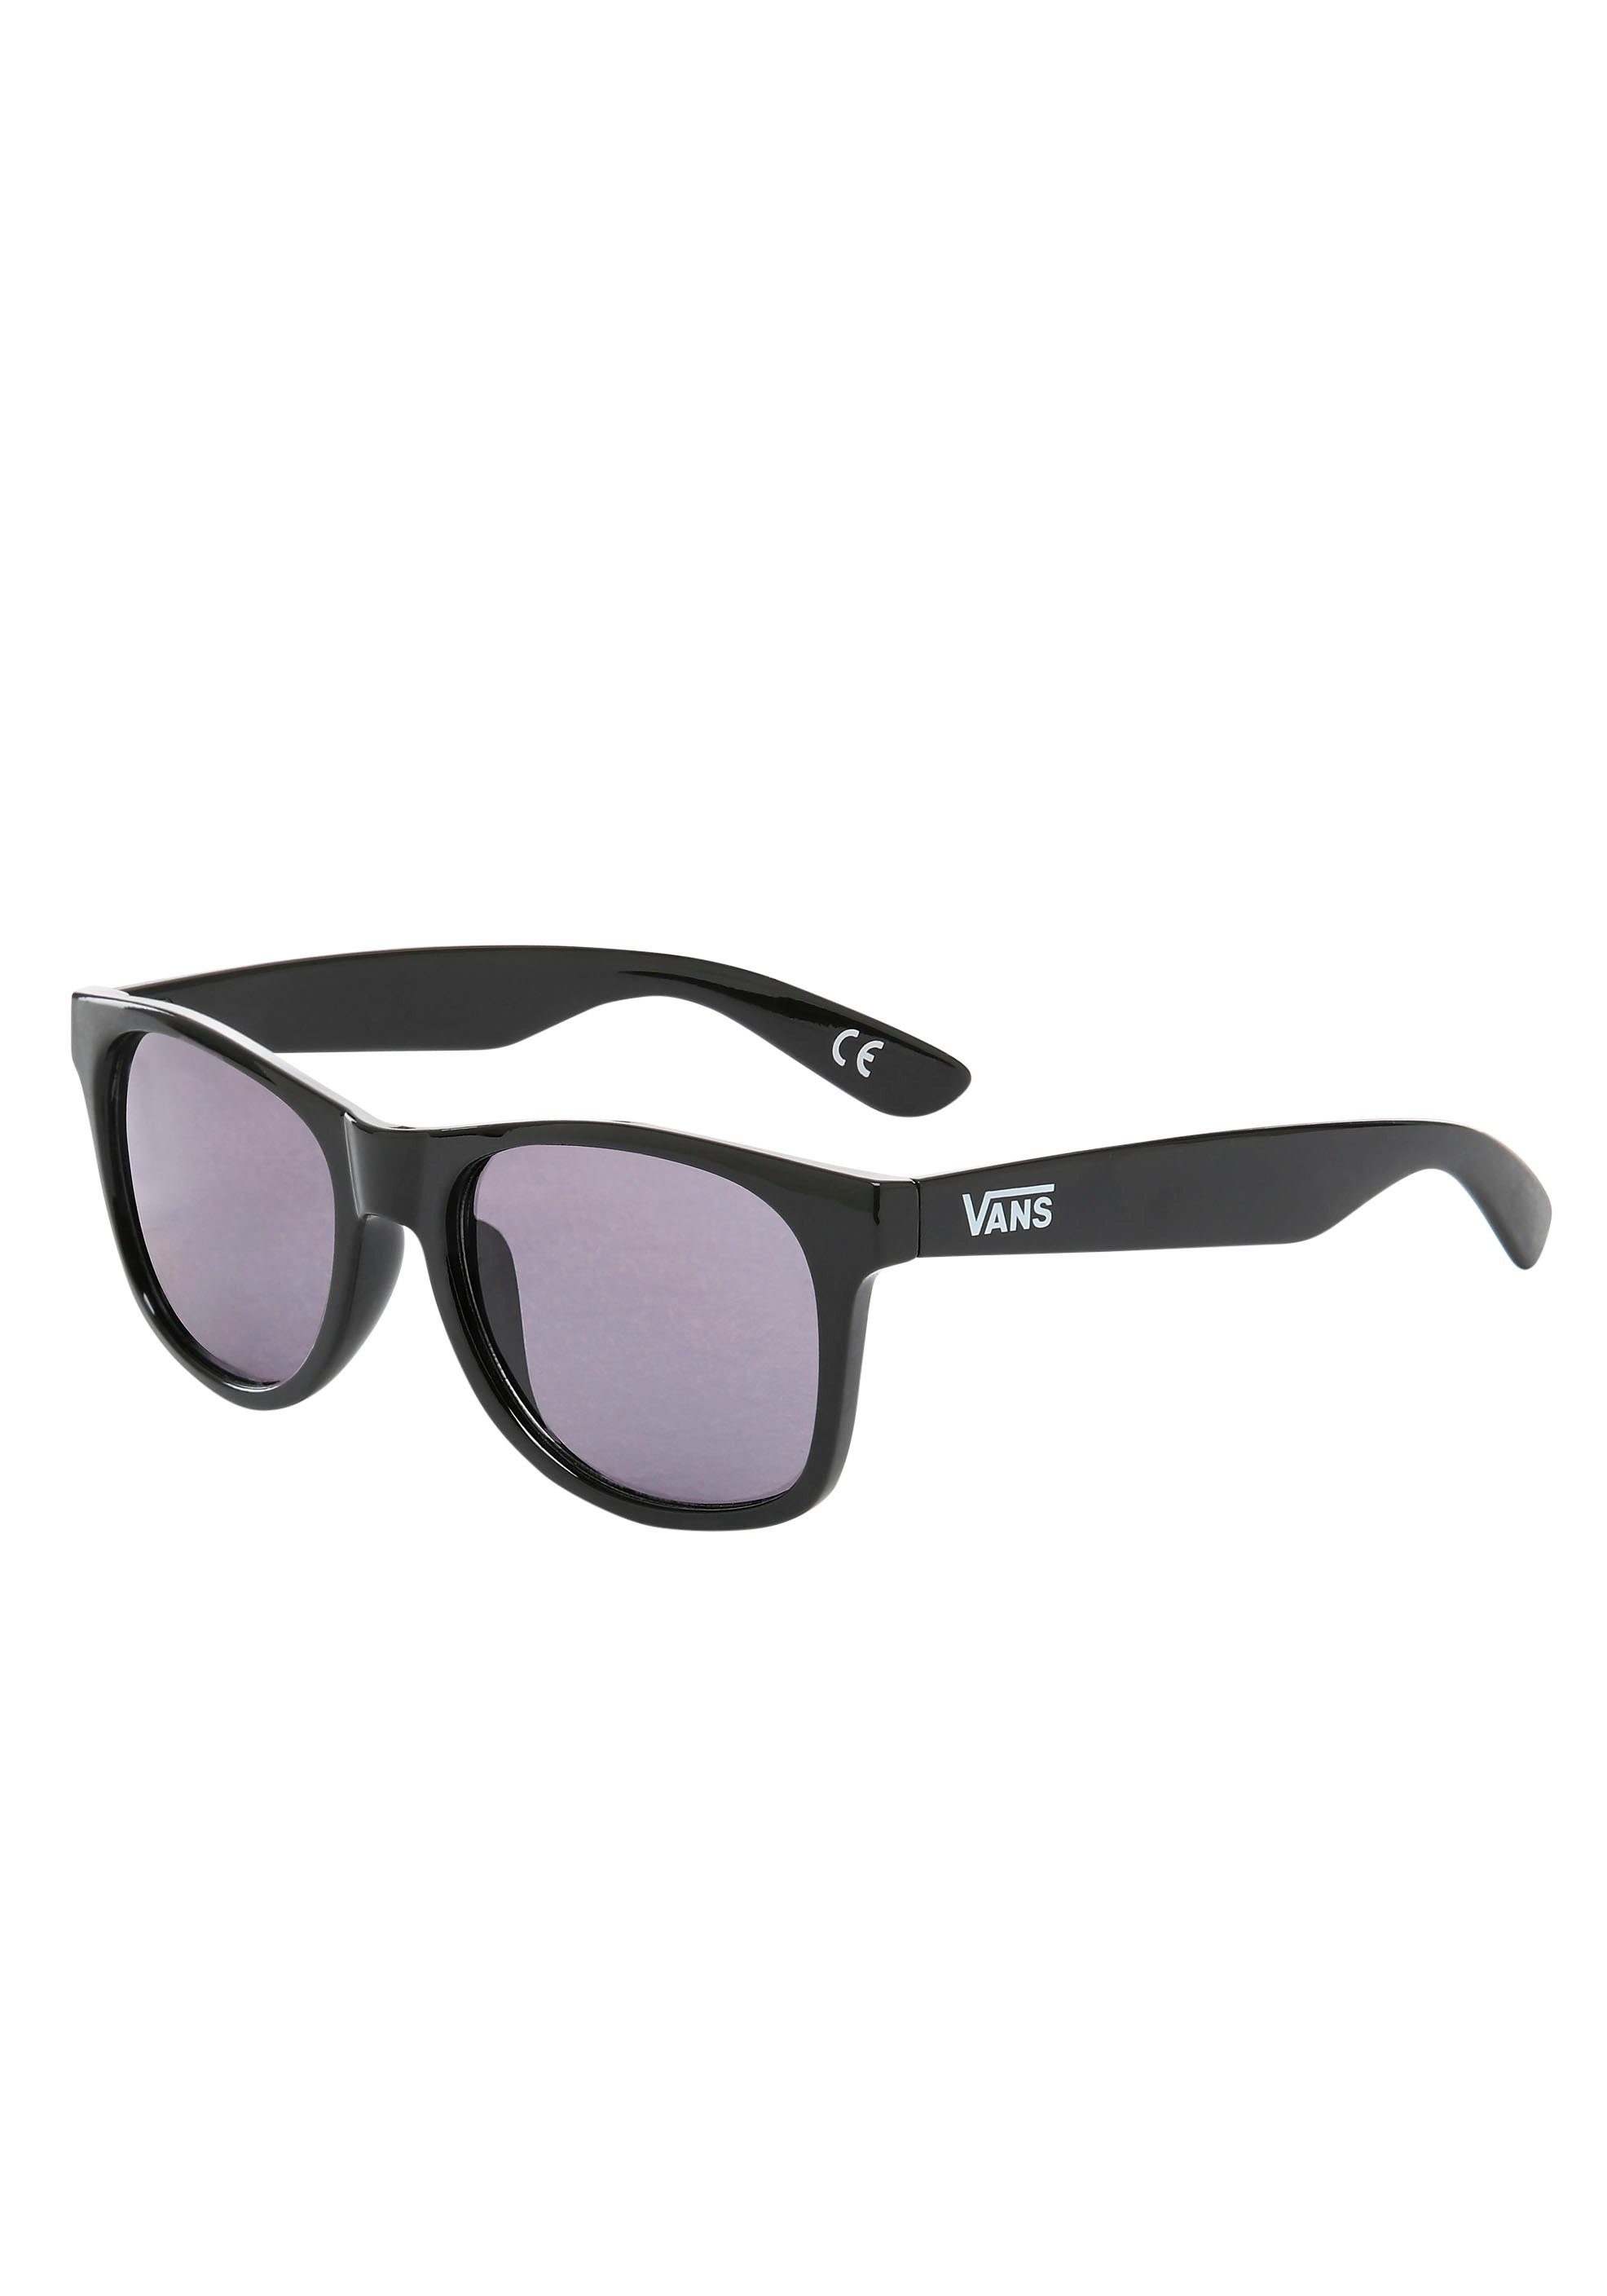 Vans Sonnenbrille »SPICOLI 4 SHADES« online kaufen | OTTO